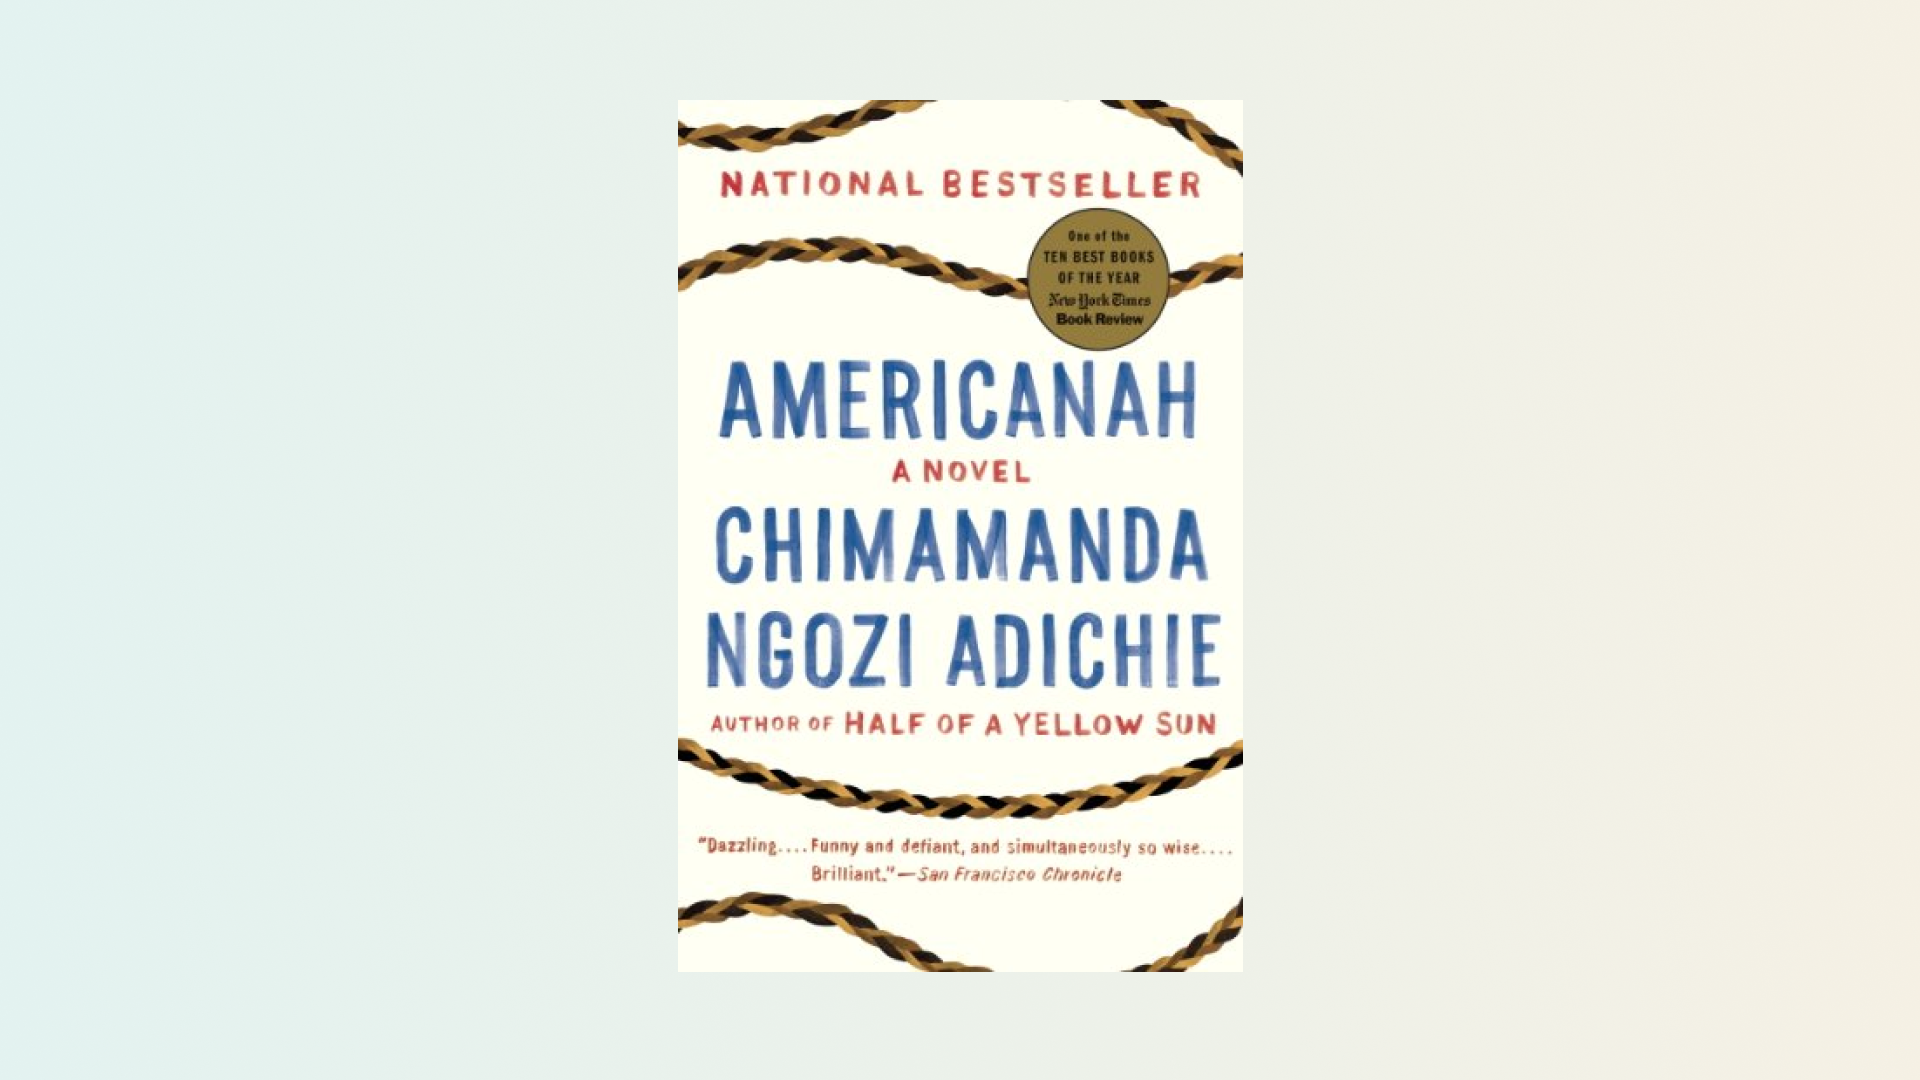 “Americanah” by Chimamanda Ngozi Adichie